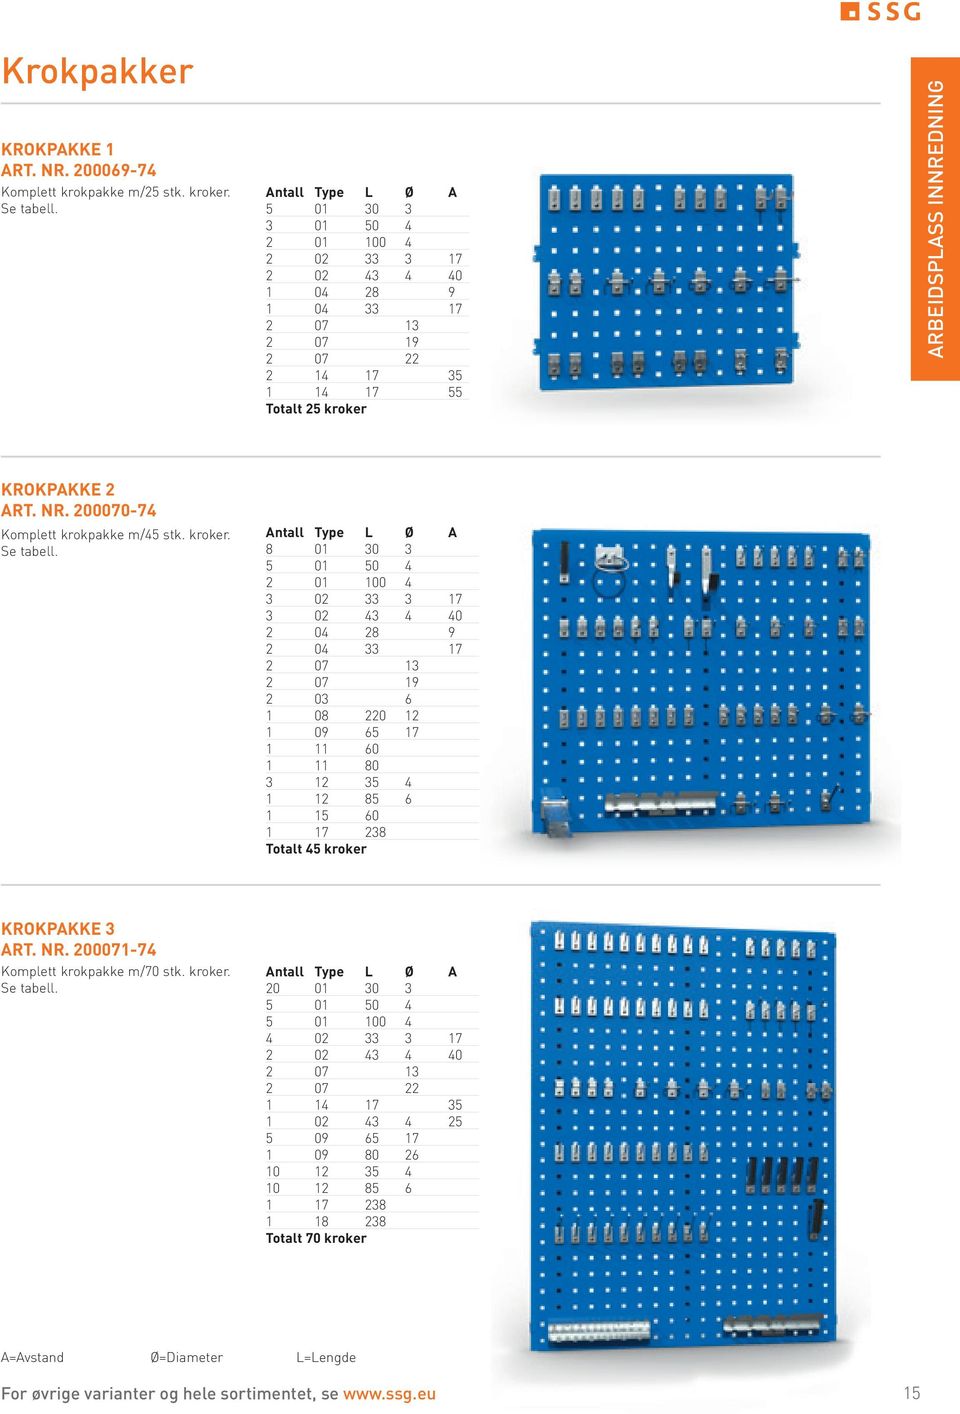 nr. 200070-74 Komplett krokpakke m/45 stk. kroker. Se tabell.